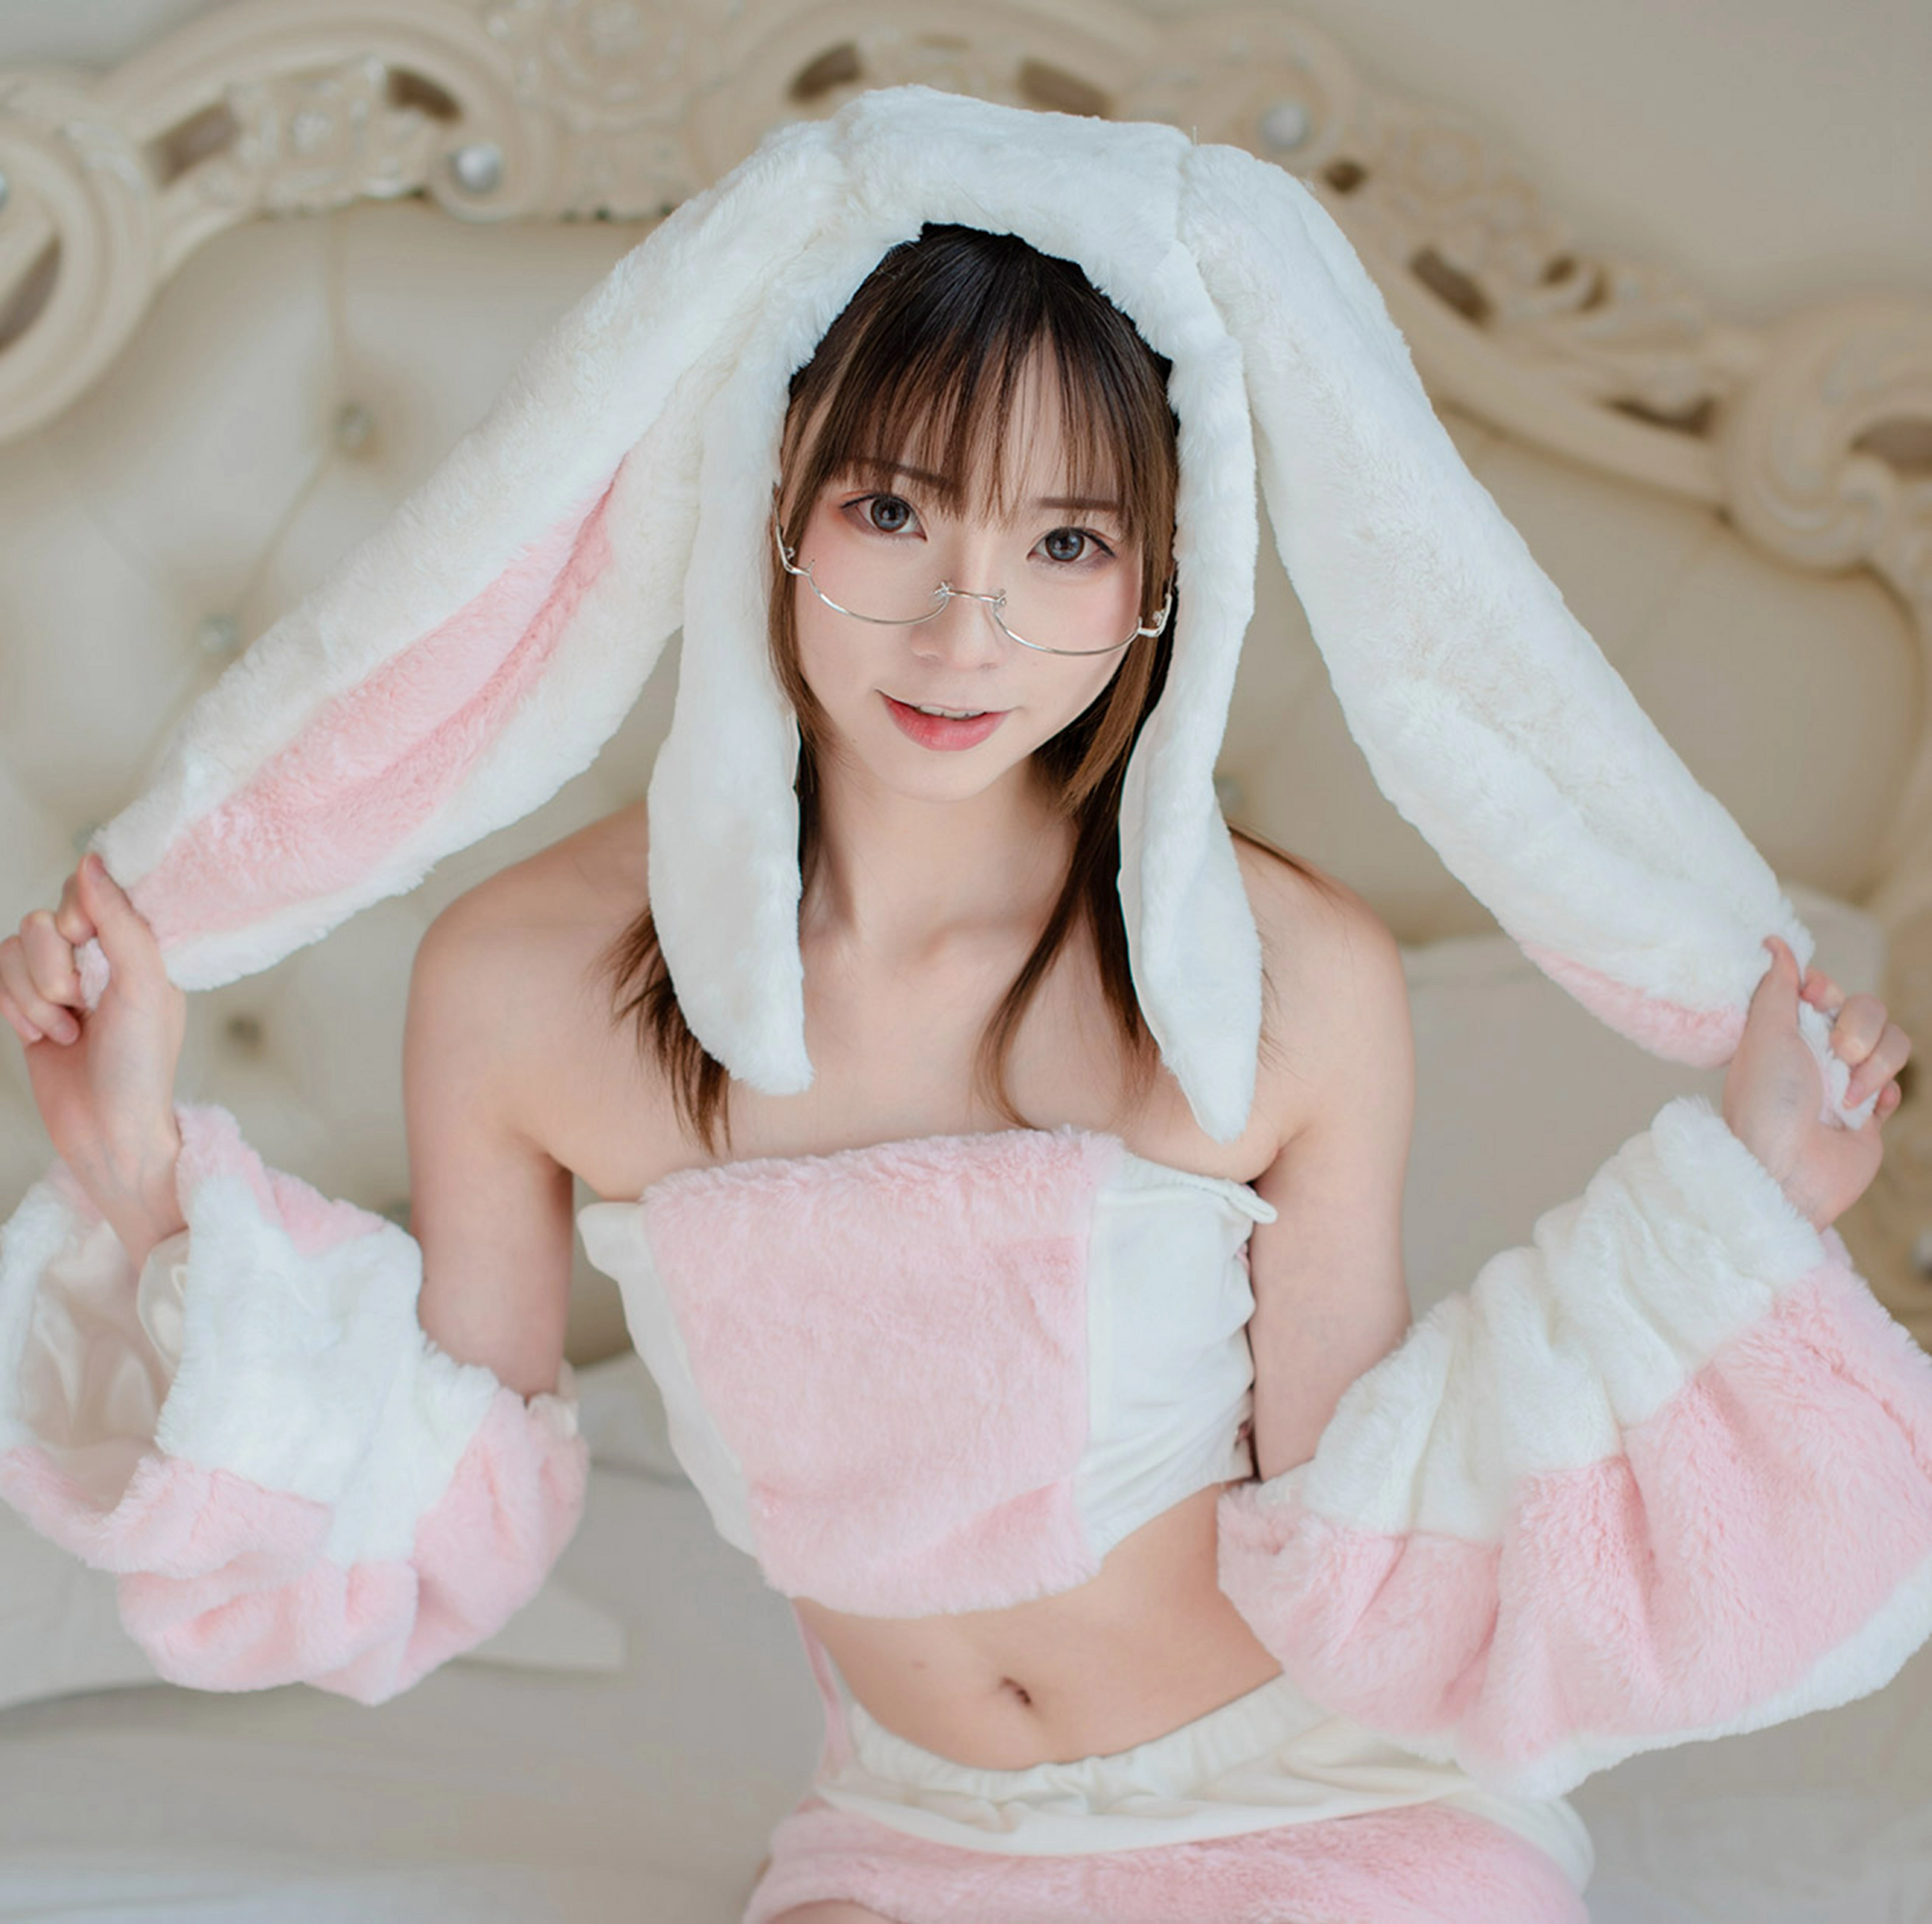 [风之领域]NO.182 清纯萝莉 可爱兔子装 粉色内衣加短裙性感私房写真集,